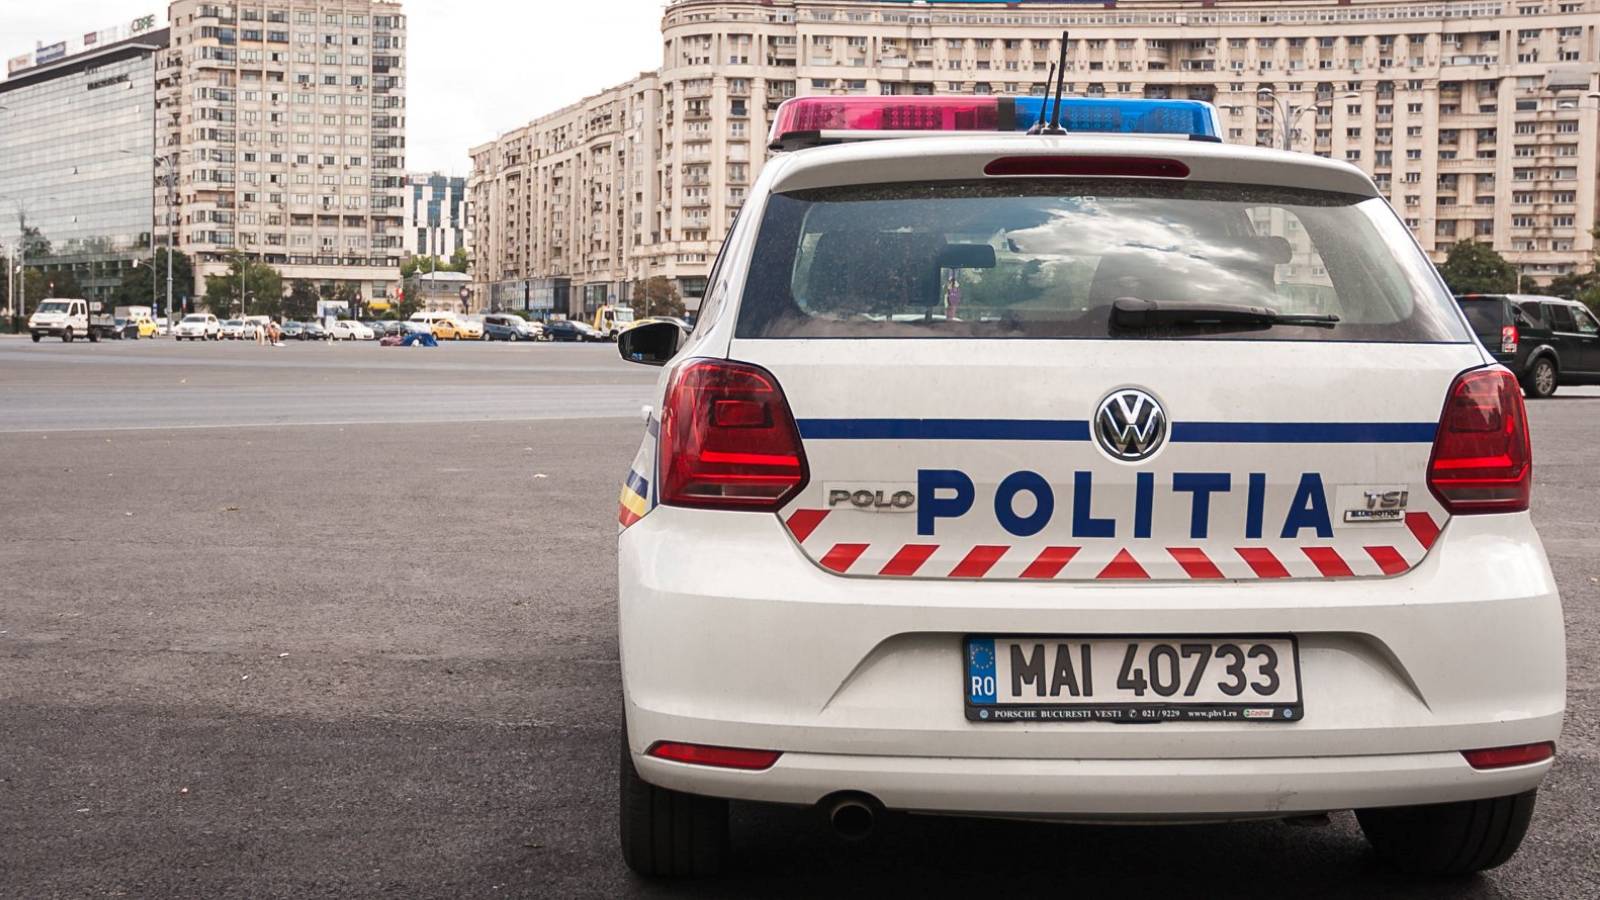 Rumänsk polis varnar för falska poliser